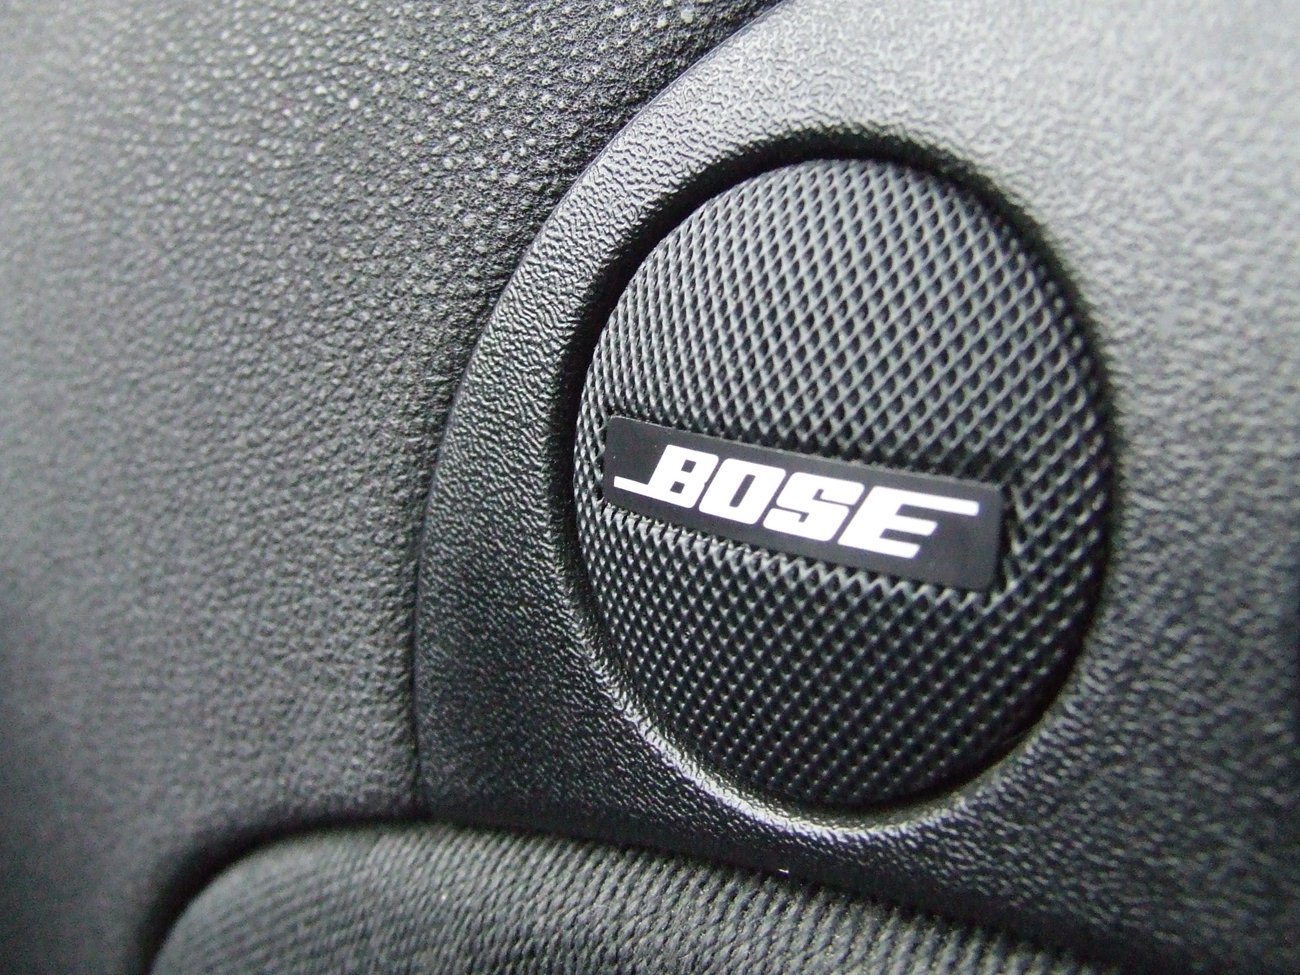 Bose авто. Автомобильная акустика Bose. Аудиосистема Bose в машину. Bose колонки в машину. Bose корпусные колонки в авто.